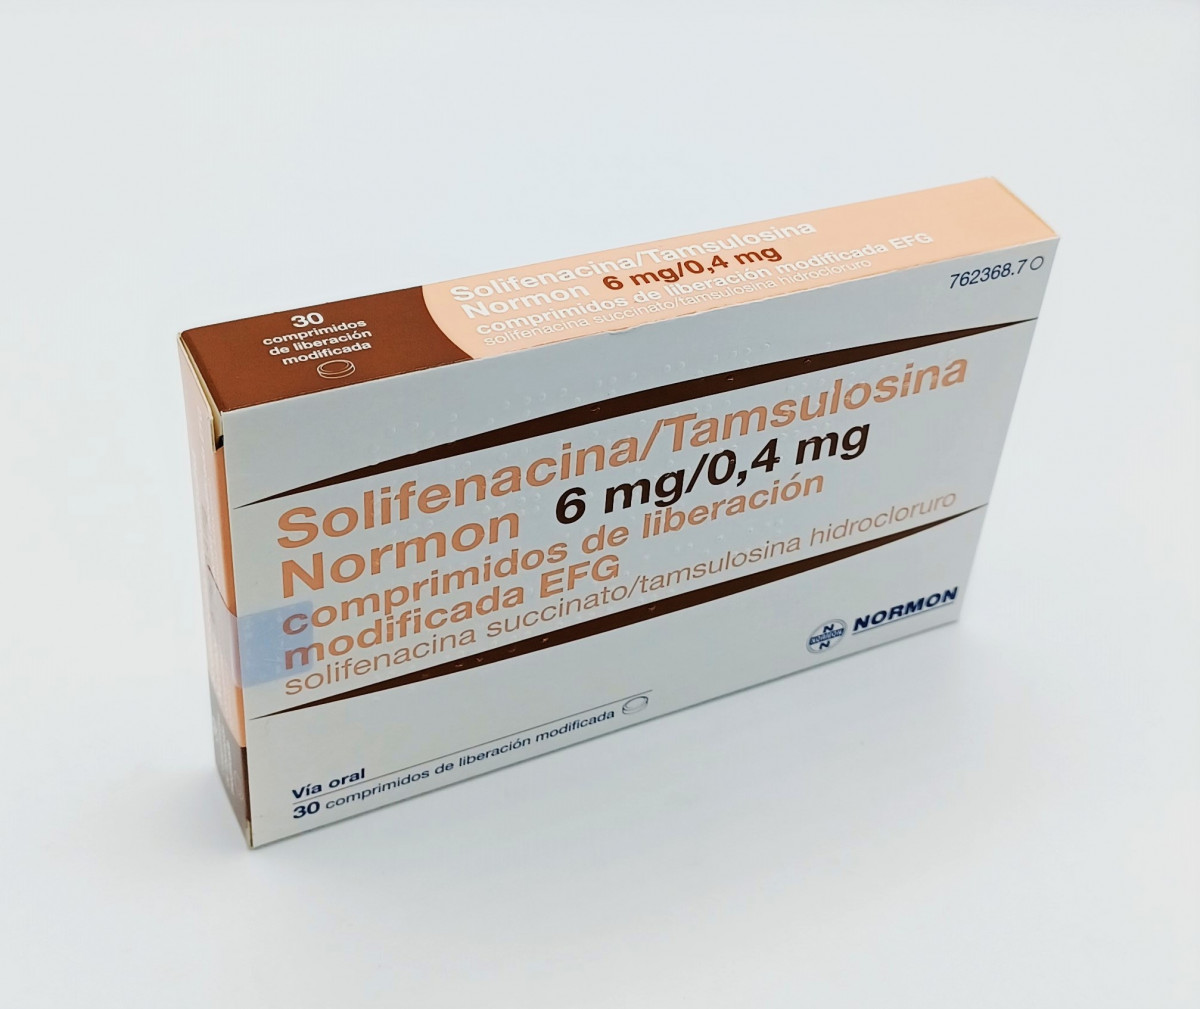 SOLIFENACINA/TAMSULOSINA NORMON 6 MG/0,4 MG COMPRIMIDOS DE LIBERACION MODIFICADA EFG, 30 comprimidos fotografía del envase.